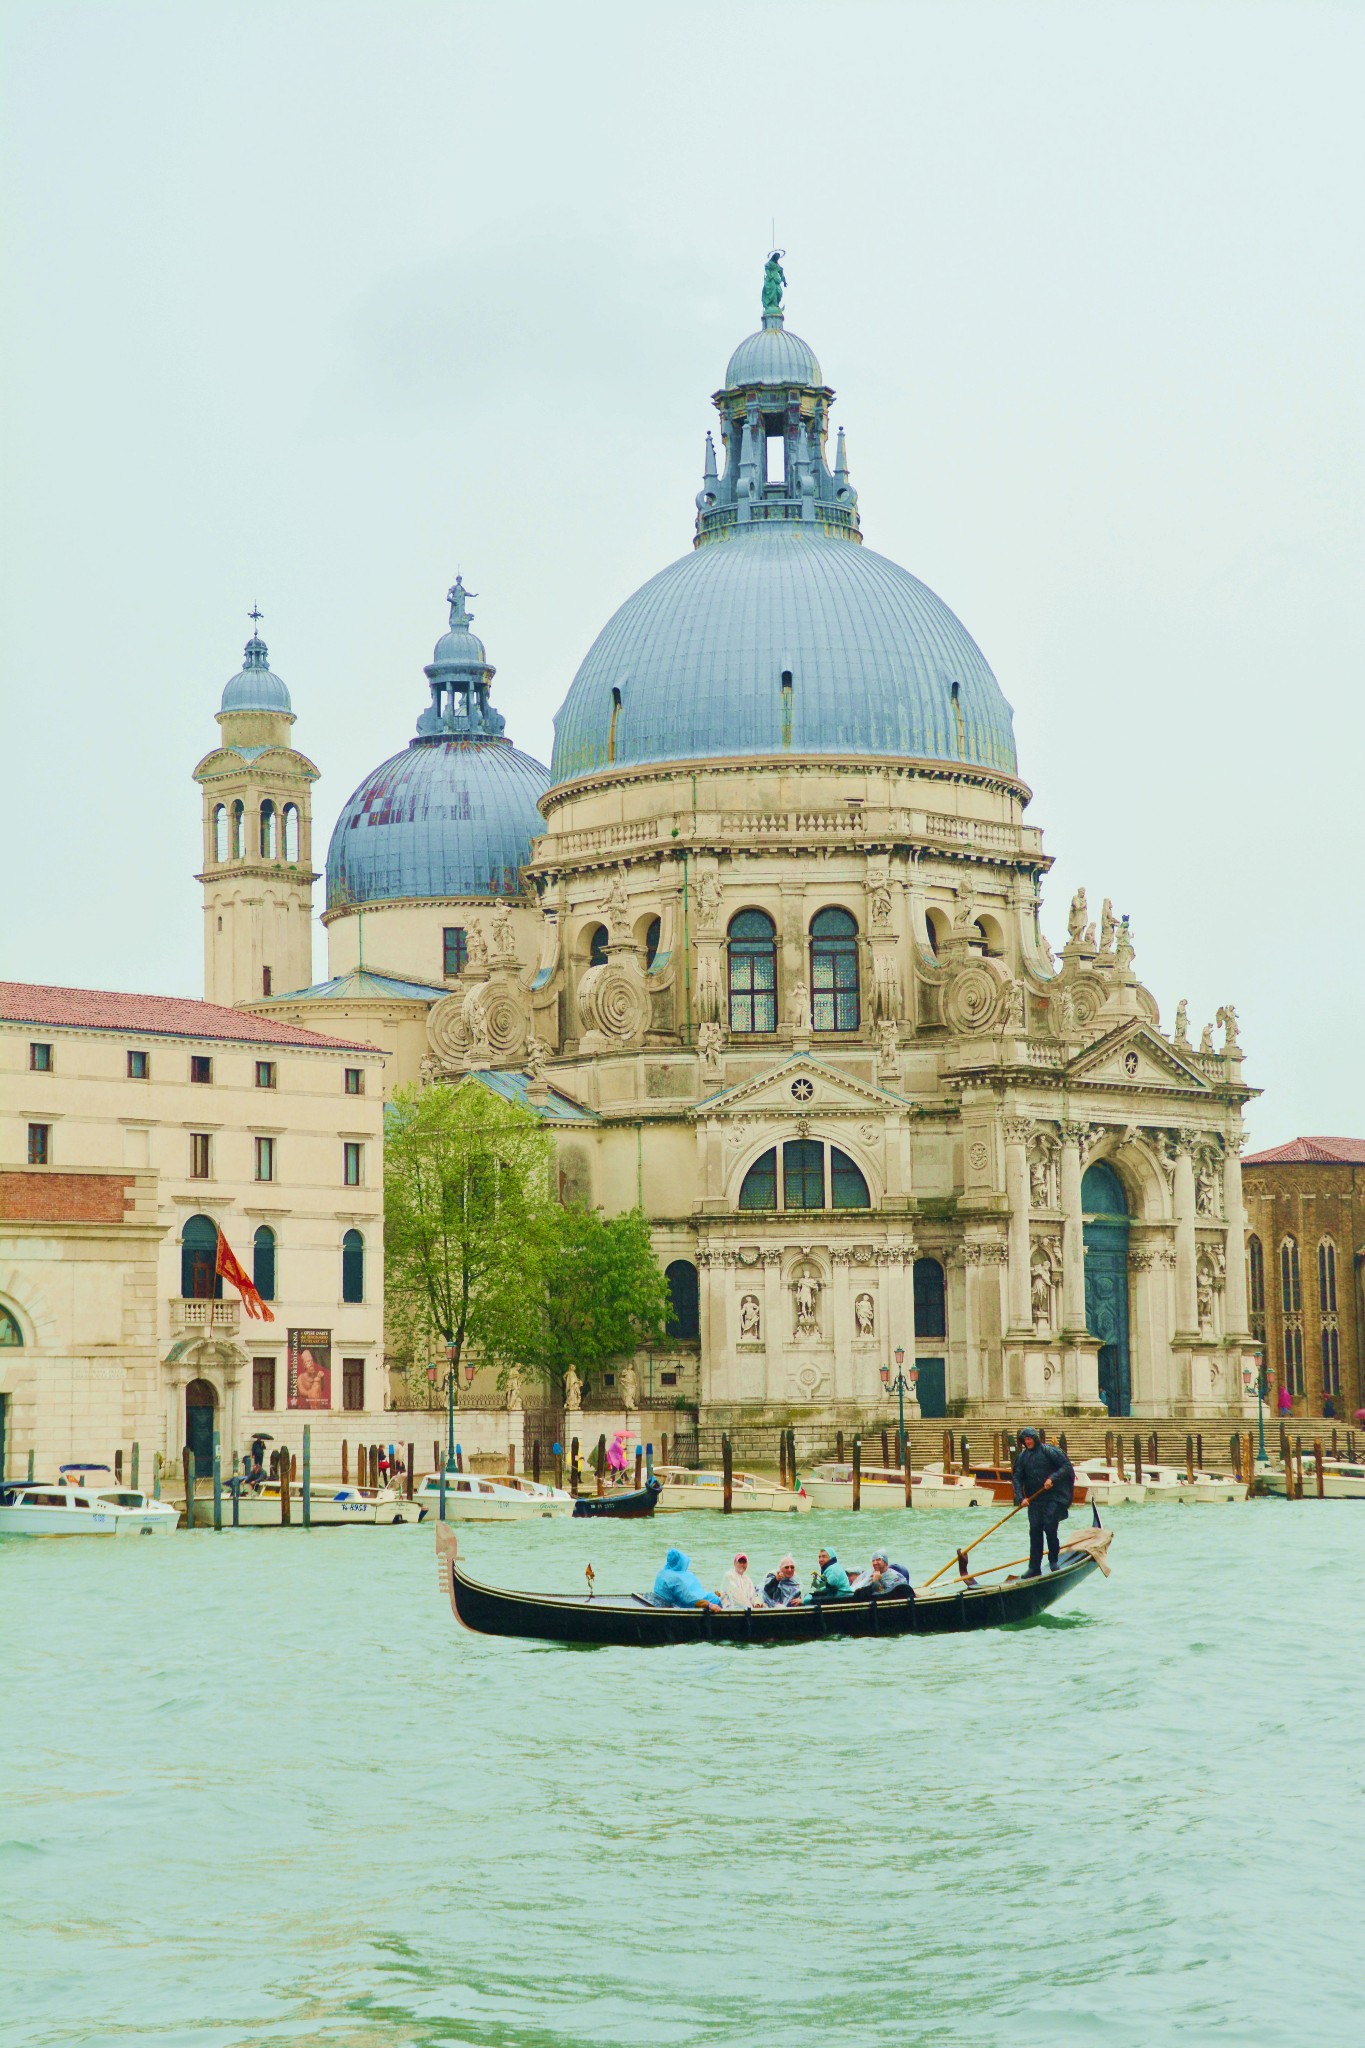 去意大利,威尼斯旅游.,威尼斯旅游攻略 - 马蜂窝